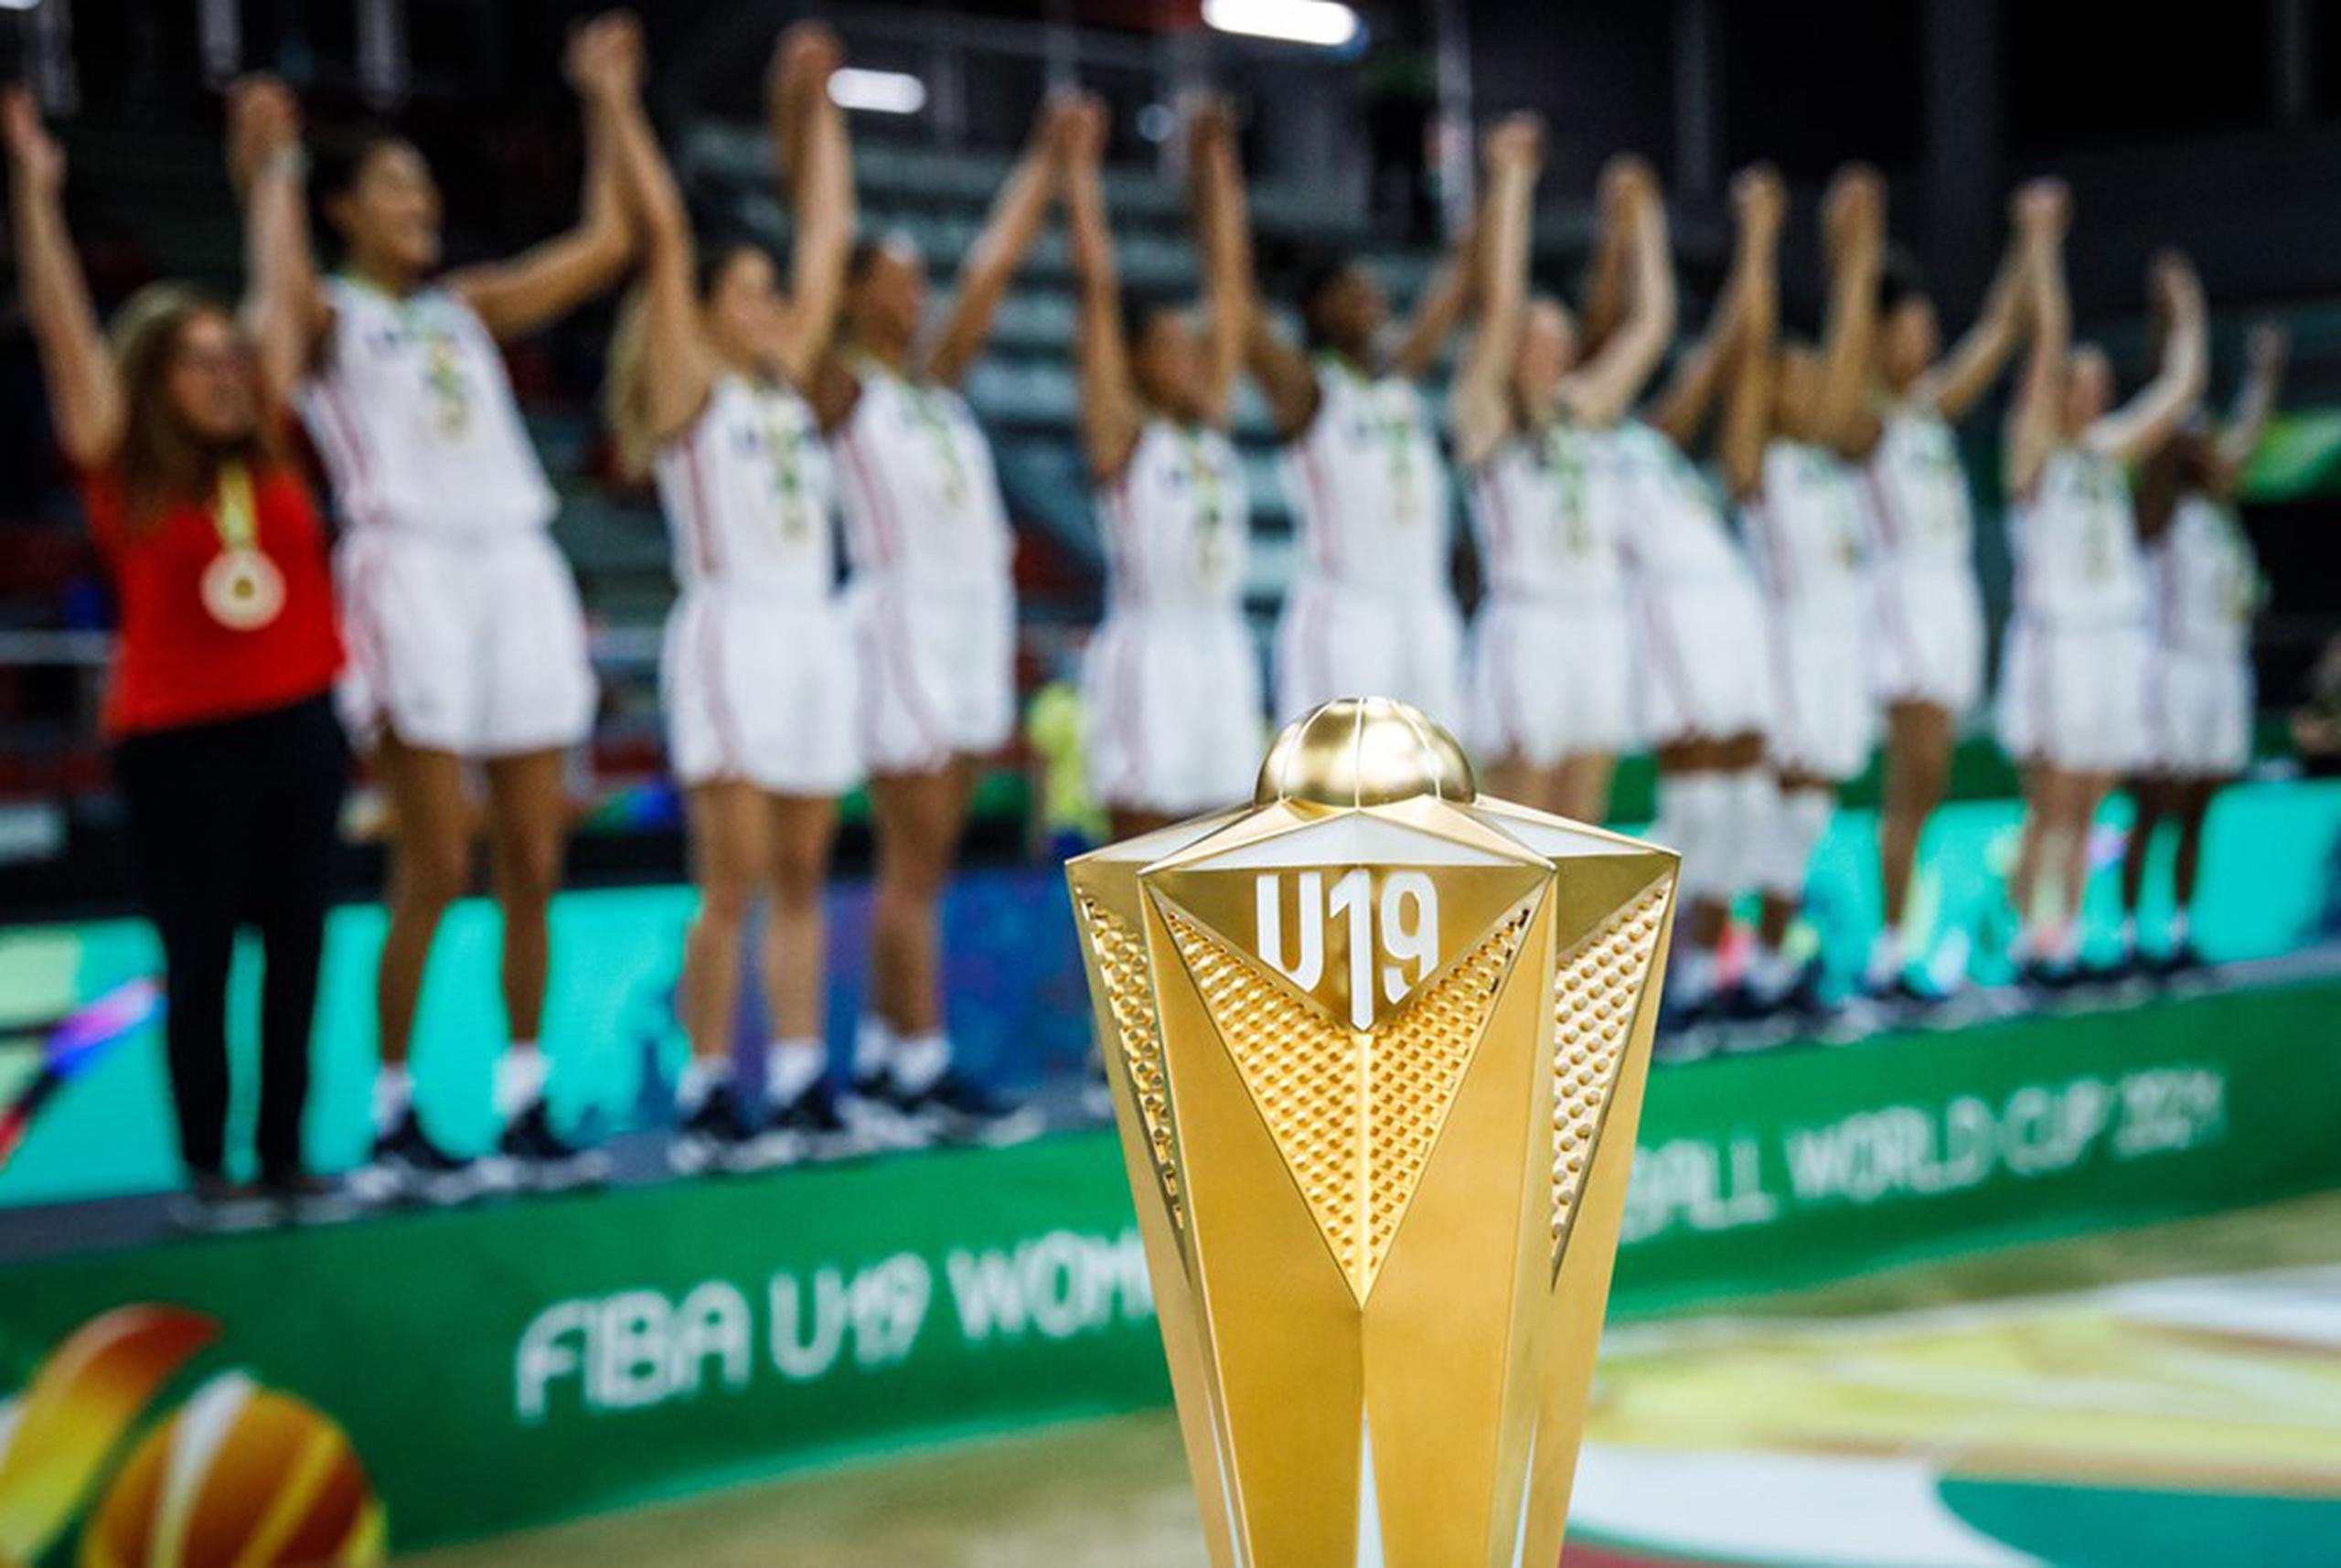 La Copa del Mundo Sub-19 Femenino de Fiba en España este verano será el primer evento de nivel A de la FIBA en jugarse sobre la superficie de juego del futuro.